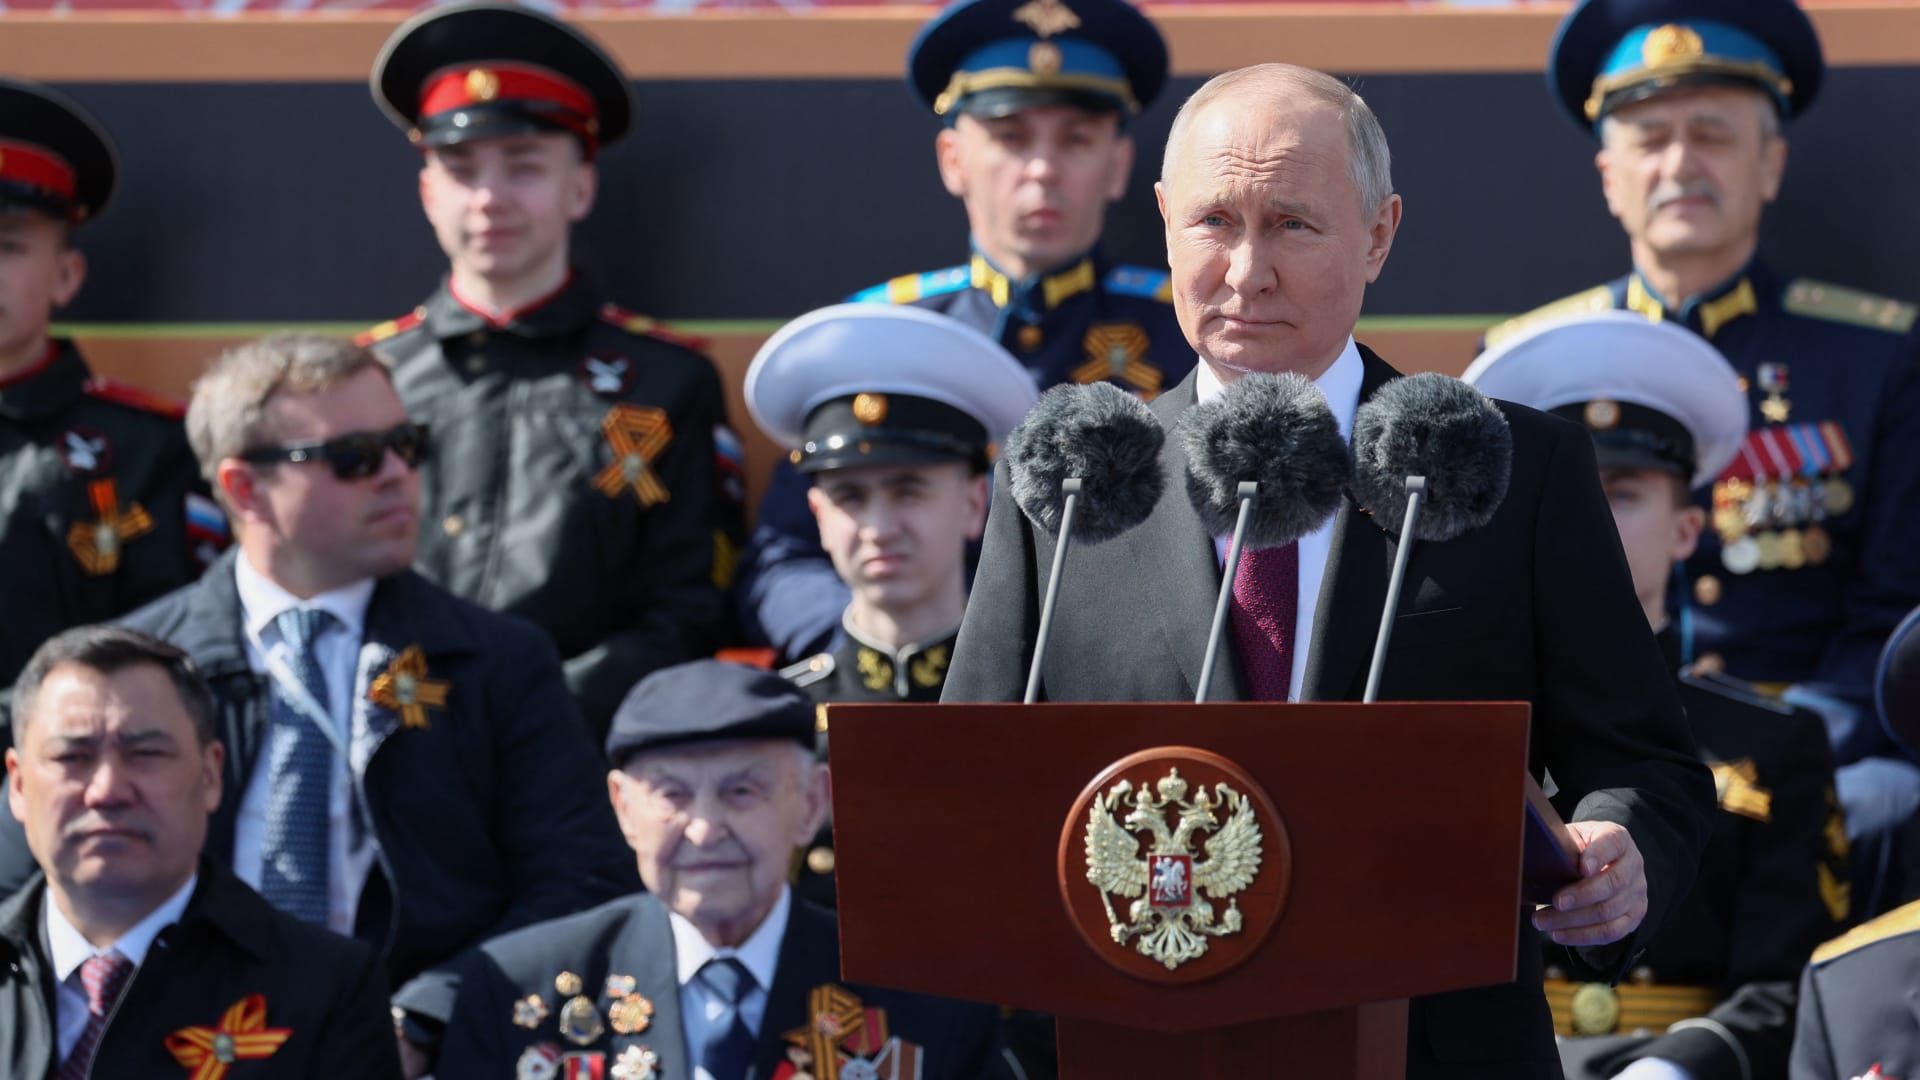 بوتين في يوم النصر على النازية: "الحرب الحقيقية تُشن ضد وطننا الأم" وأريد مستقبلا سلميا